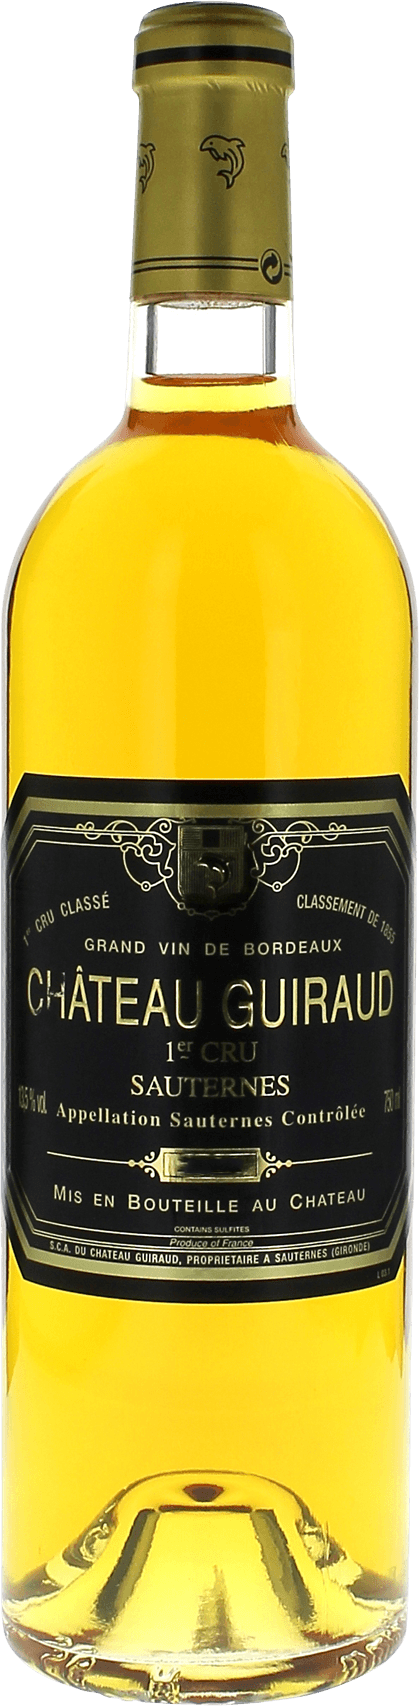 Guiraud 1996  Sauternes, Bordeaux blanc